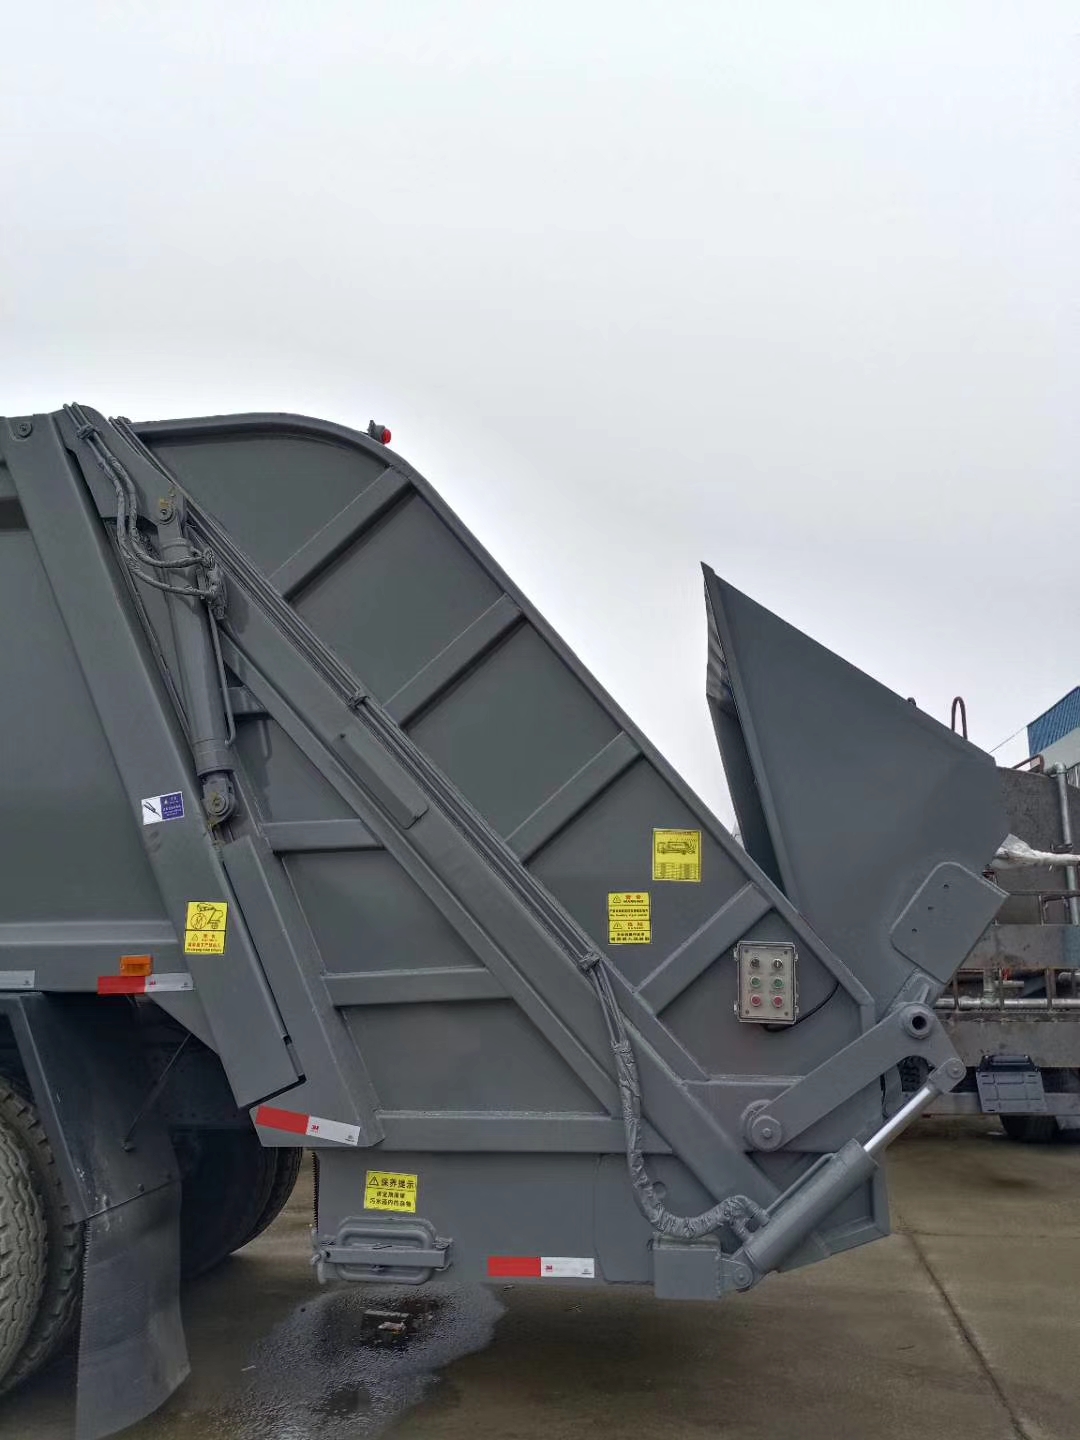 东风18吨压缩式垃圾车  程力压缩式垃圾车生产厂家 压缩垃圾车图片报价图片